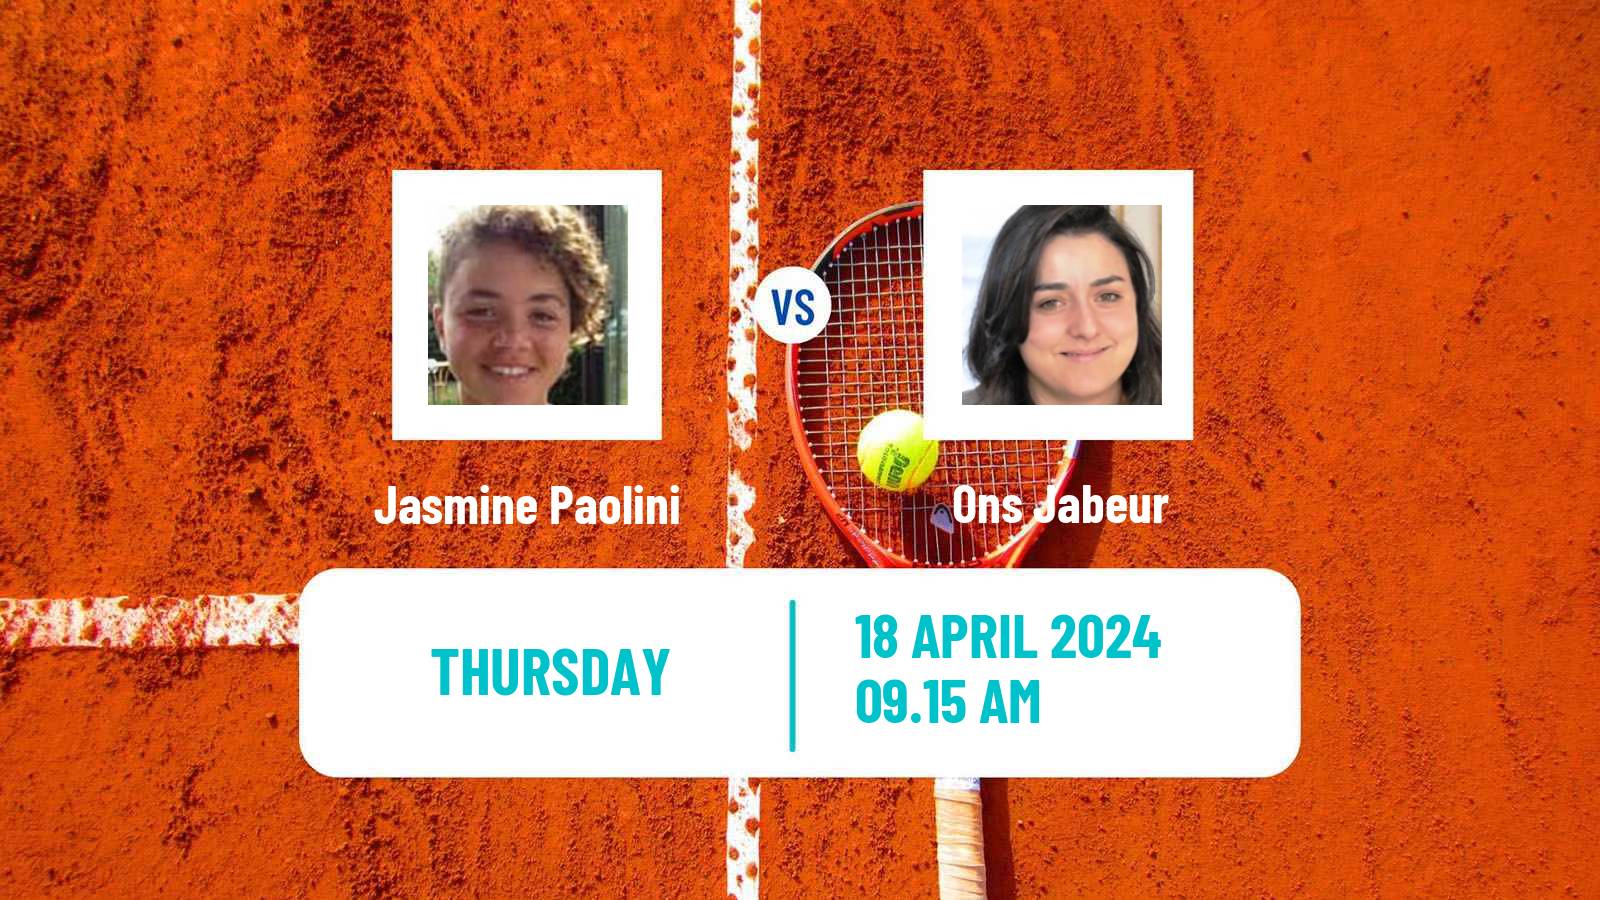 Tennis WTA Stuttgart Jasmine Paolini - Ons Jabeur